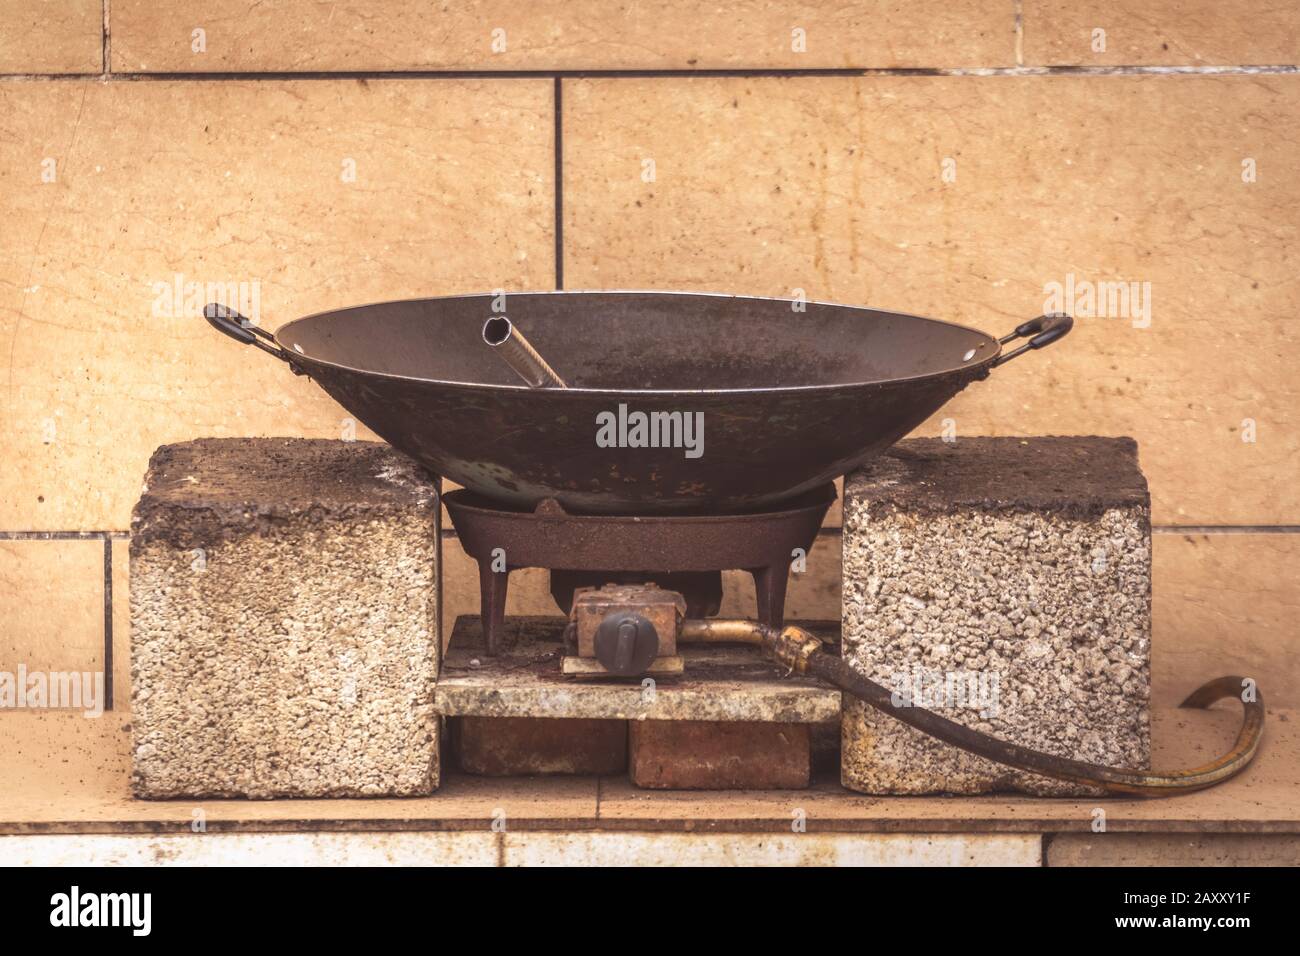 Alte schwarze Metallpfanne wok auf einem Gaskocher auf einem  Straßenlebensmittelstand in China Stockfotografie - Alamy